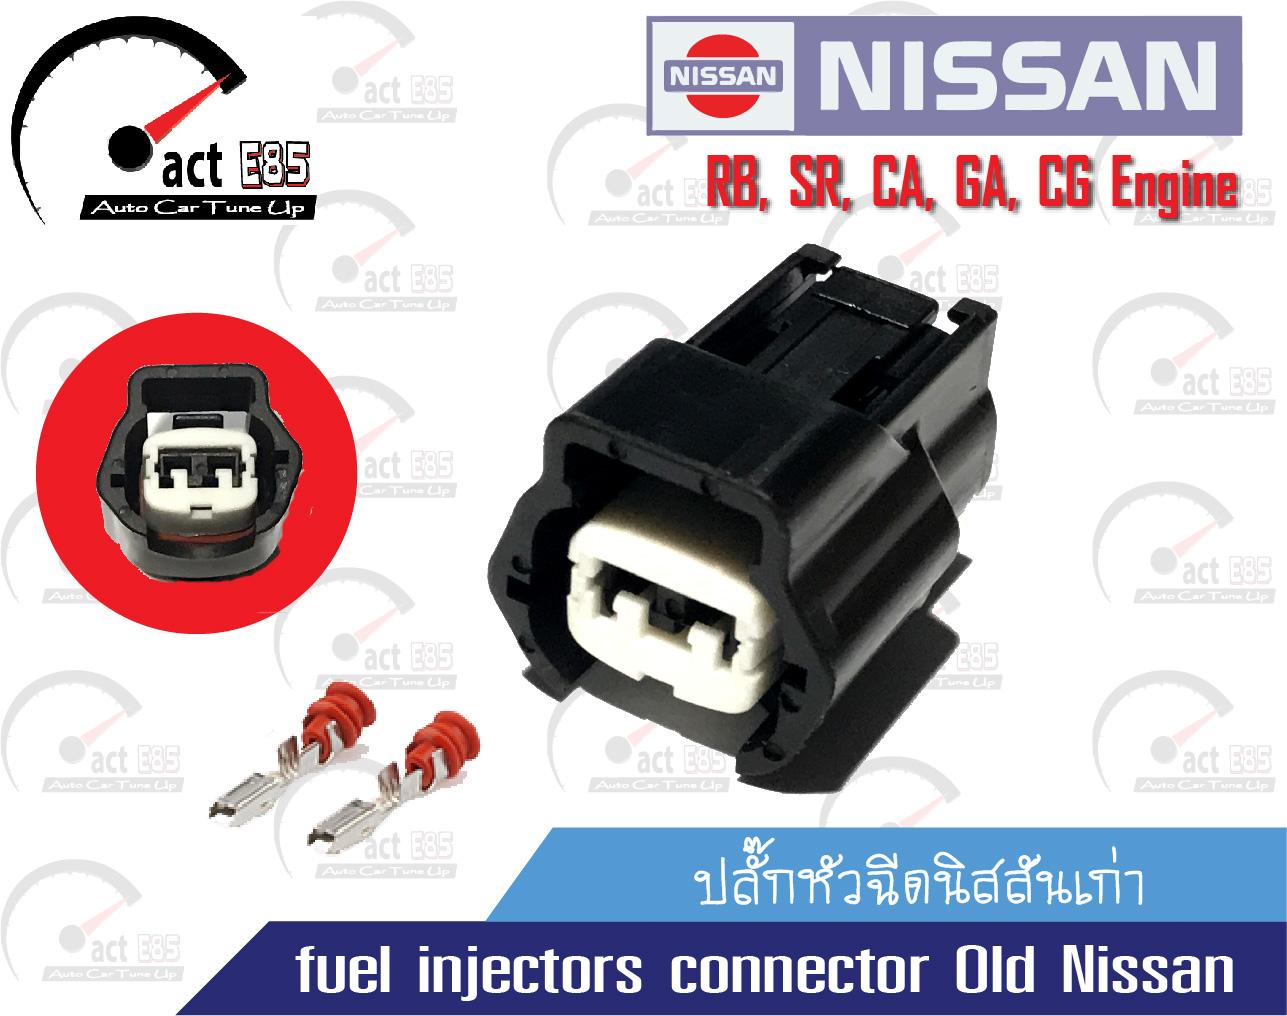 ปลั๊กหัวฉีดนิสสันเก่า (fuel injectors connector Old Nissan) ชุด 1ตัว